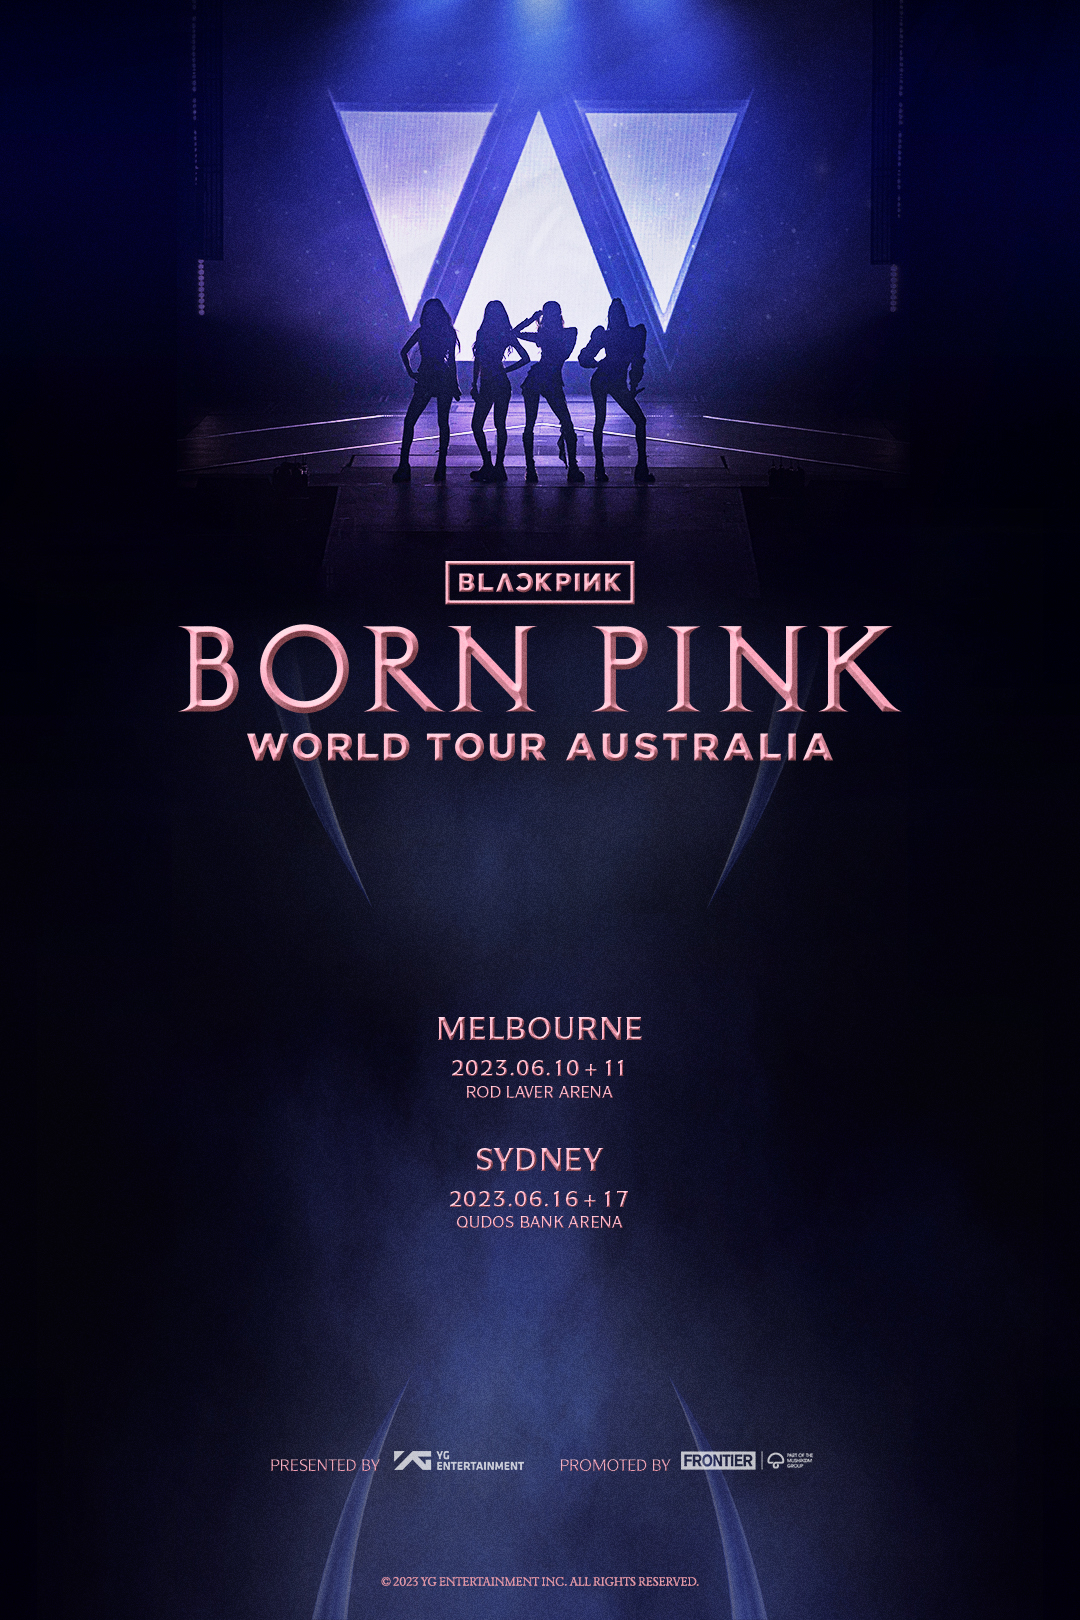 Blackpink concert ticket on 10th June, Melbourne